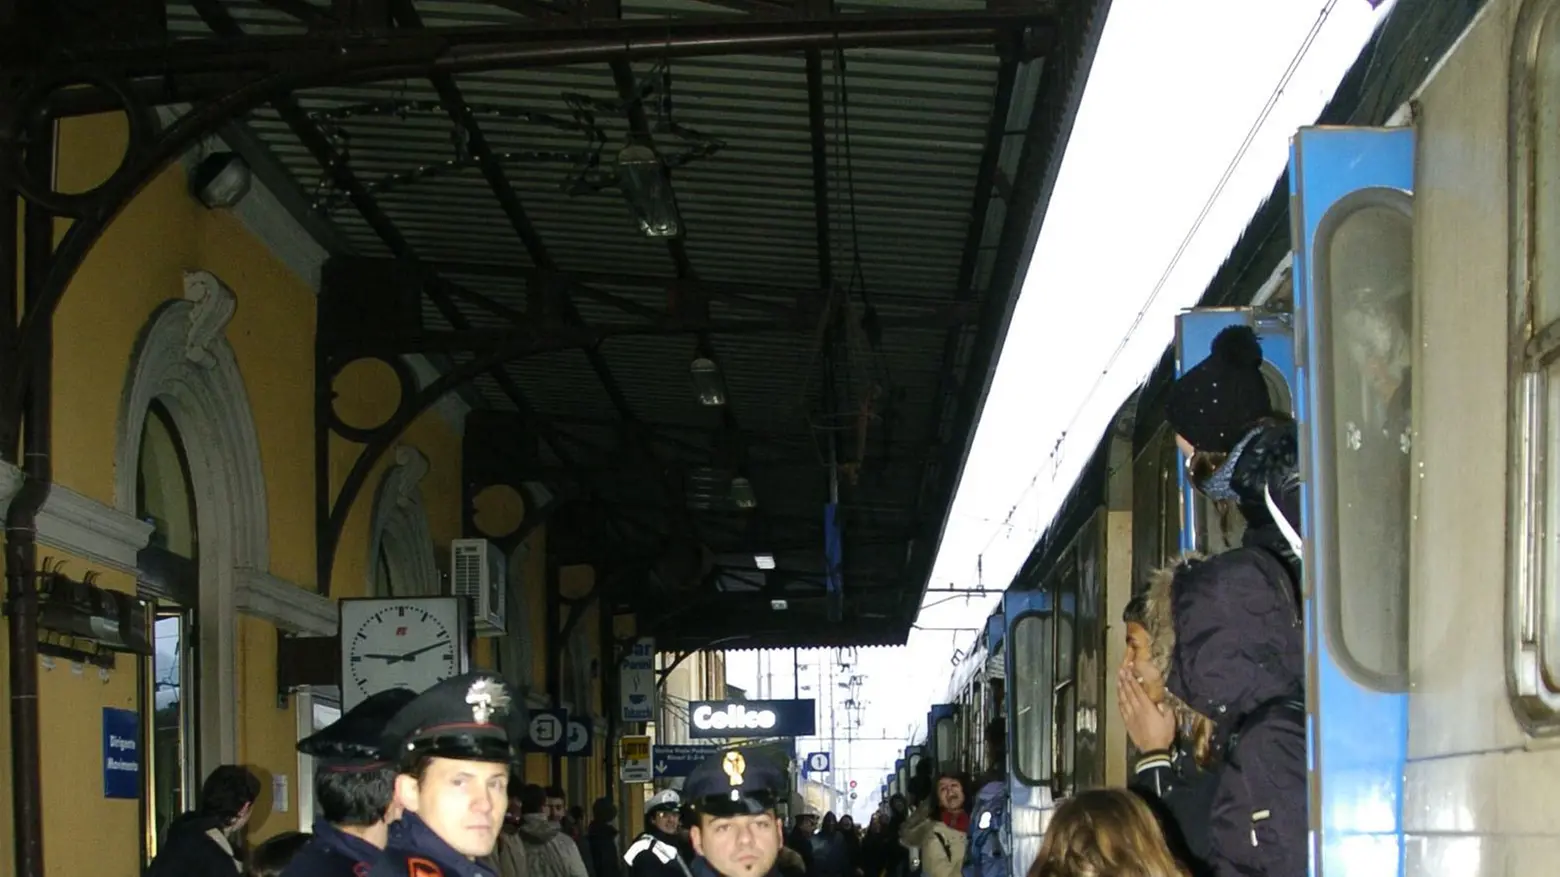 L’odissea di un progetto  Caserma dei carabinieri:  finalmente i lavori al via